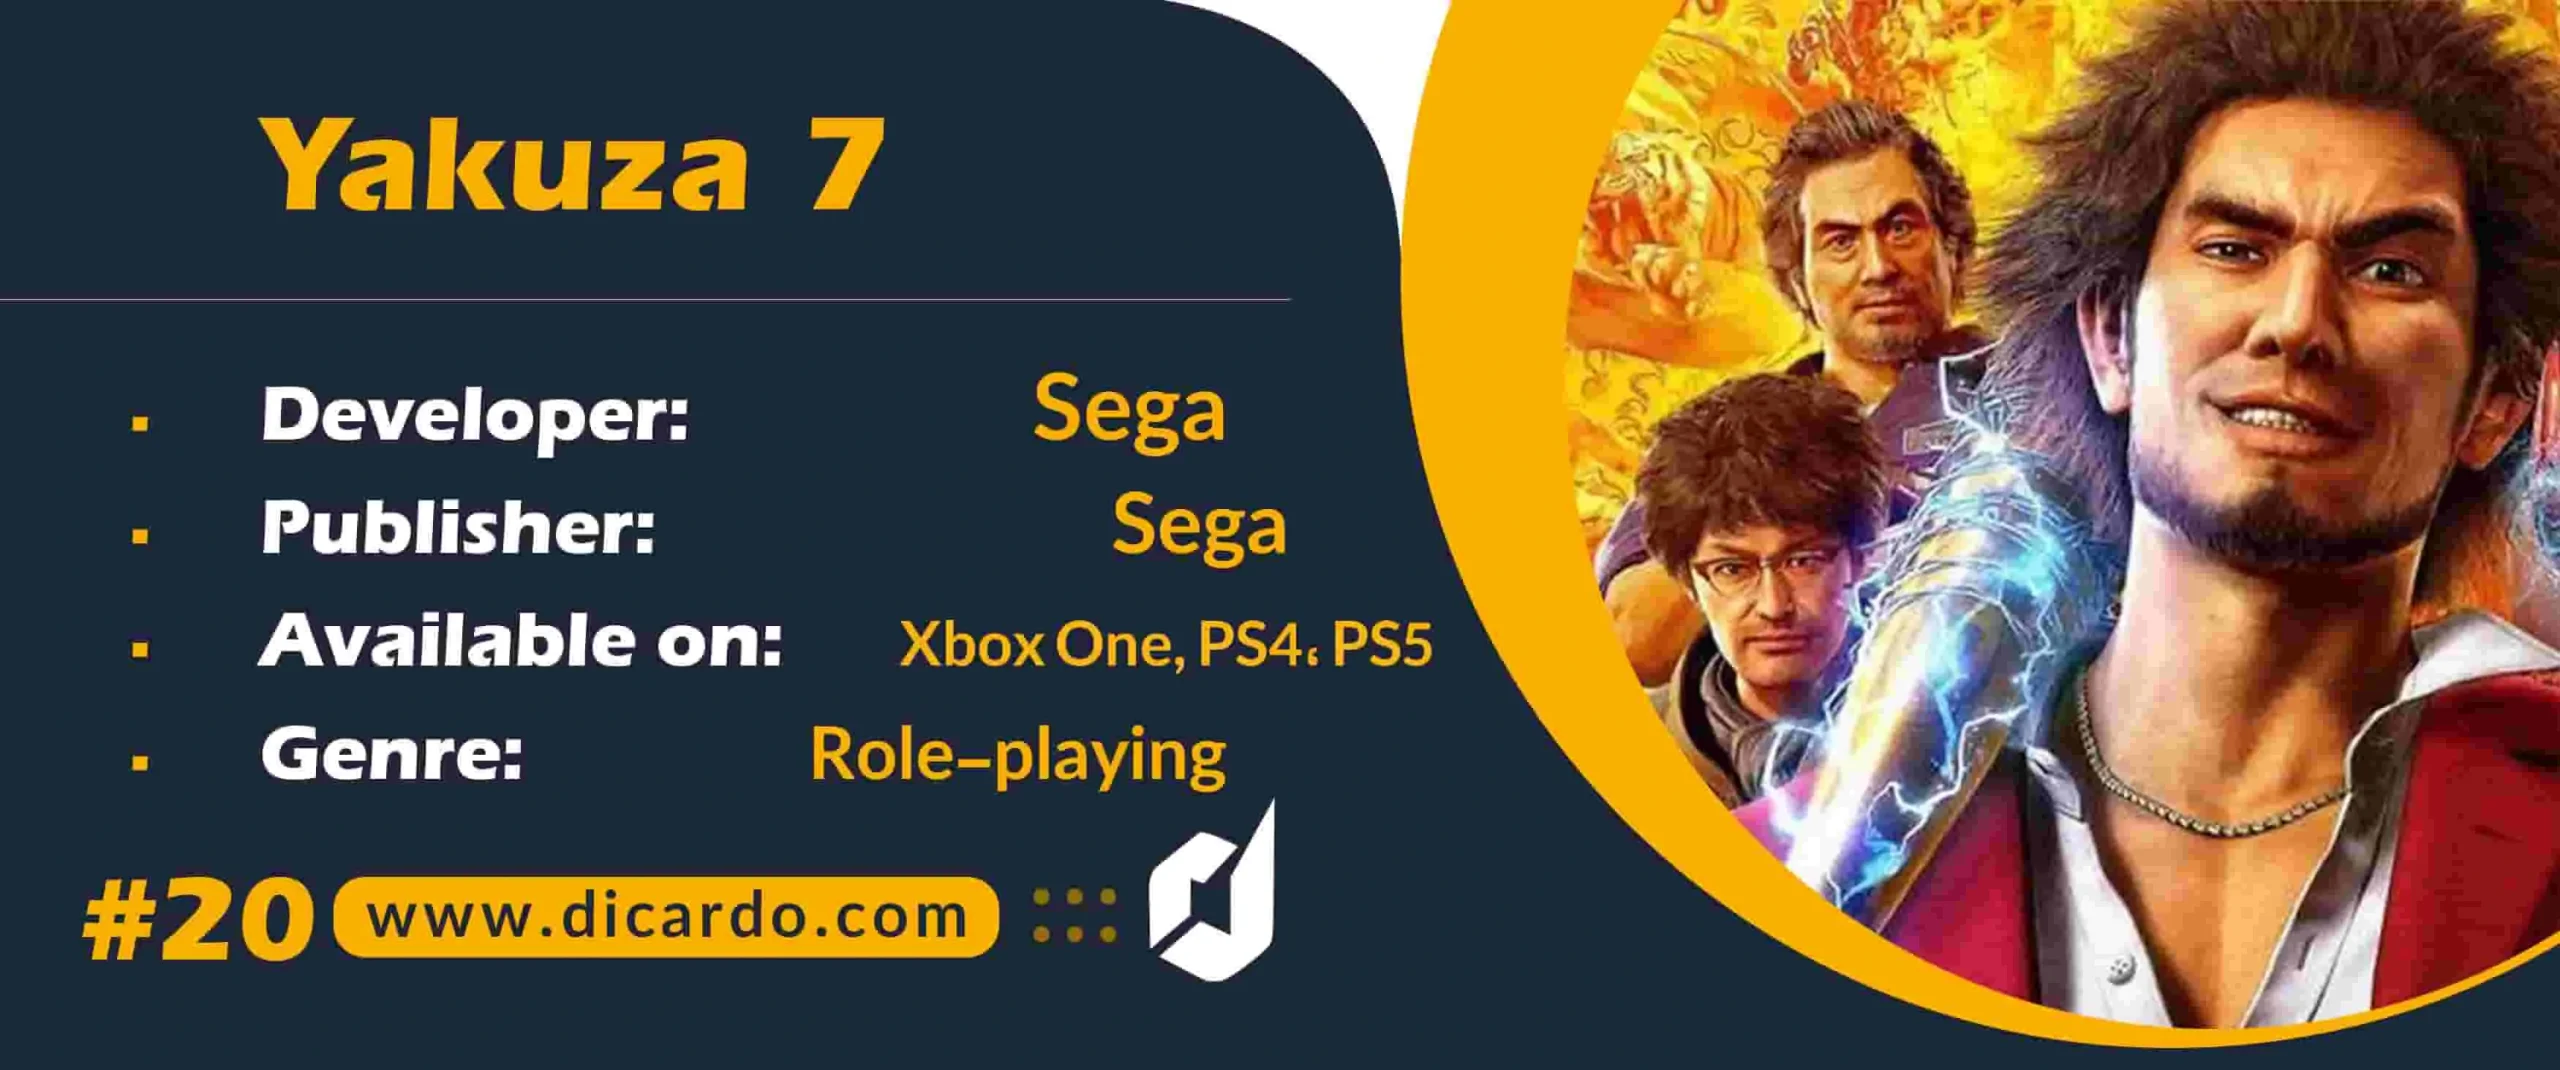 #20 یاکوزا 7 Yakuza 7 از برترین بازیهای کامپیوتری نقش آفرینی